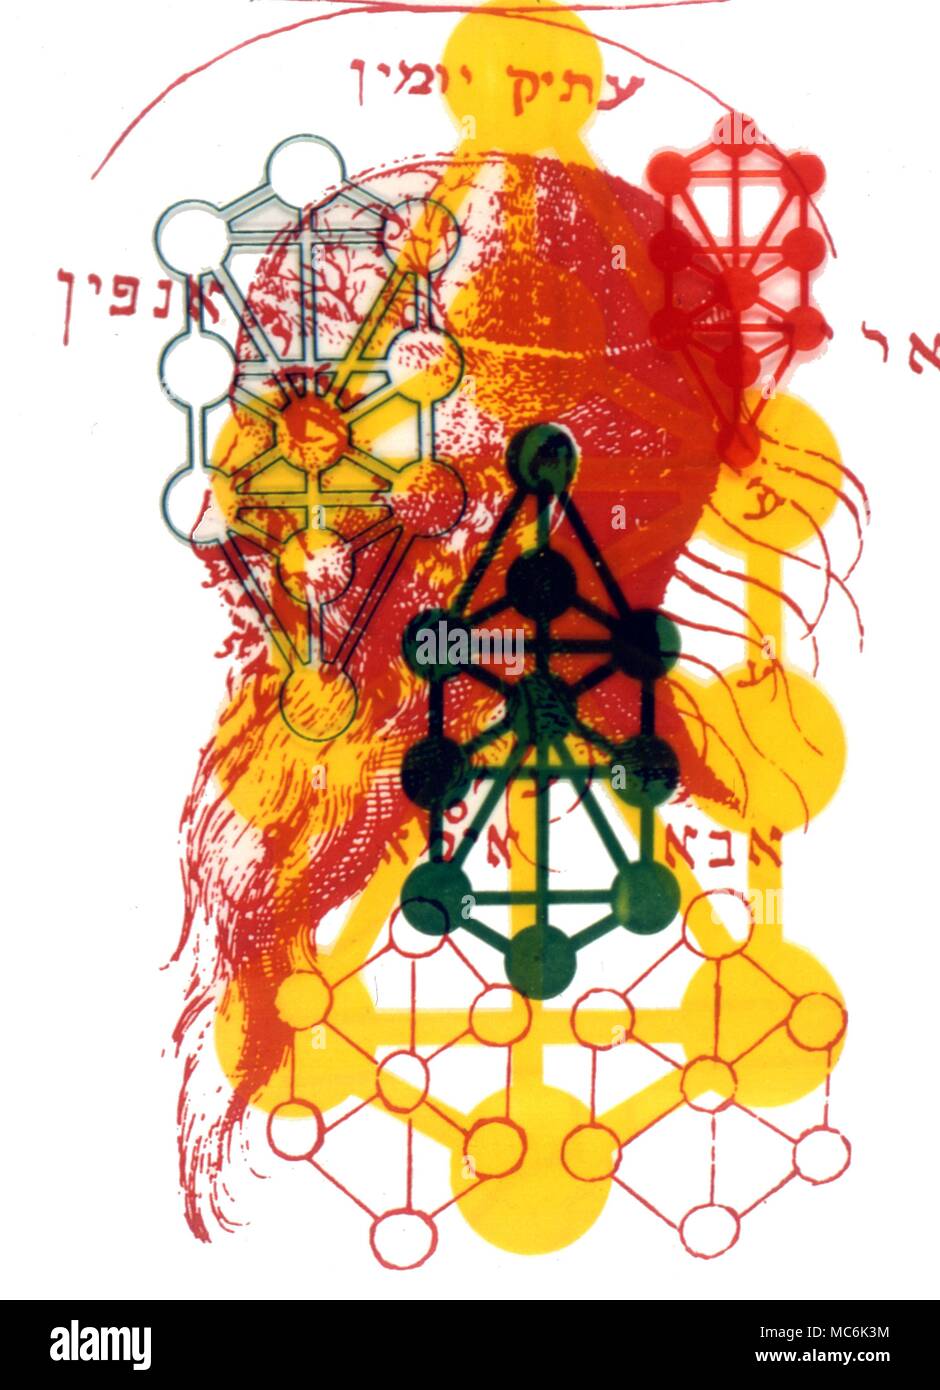 Kabbala Adam Kadmon der Kopf von Adam Kadmon überlagert mit dem Sephirothic Baum oder Baum des Lebens Kabbala n: manchmal als Kabbala hat zwei Bedeutungen; der erste eine Körper der mystischen Lehren der rabbinischen Ursprungs, die auf eine esoterische Interpretation der Hebräischen Schriften basieren. Die Kabbala ist auch als Geheimlehre ähneln diese Lehren bekannt. Ein traditionell geheime esoterische oder okkulte Angelegenheit die Sephirothic Baum besteht aus zehn Globen von leuchtenden Glanz in drei vertikale Spalten angeordnet und durch 22 Kanäle oder Pfade verbunden. Stockfoto